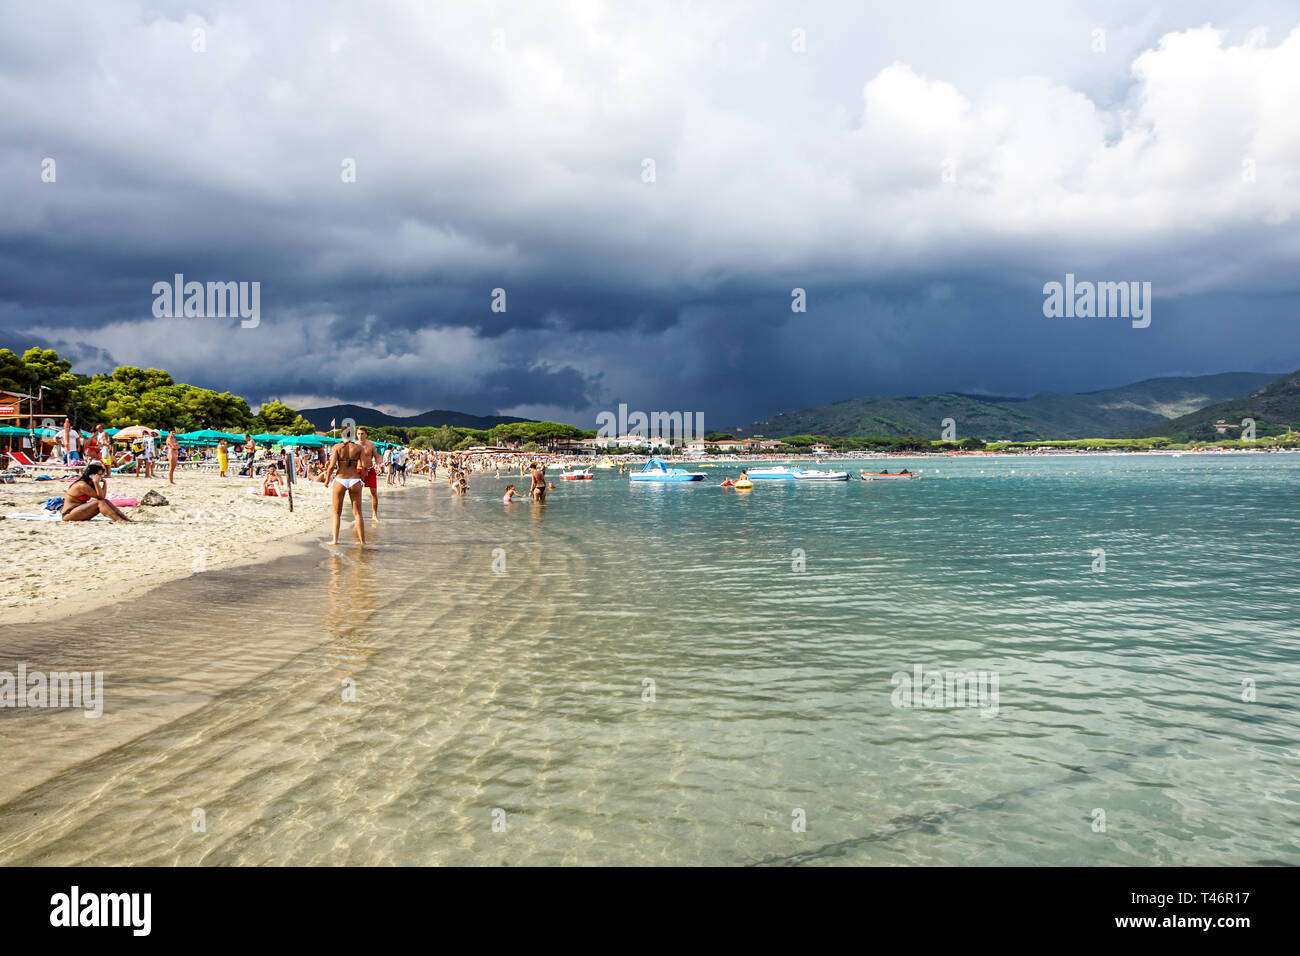 Toskana, Italien, 17. Juli 2018: Die wetterlage vom tropischen Sturm am Strand betroffen Stockfoto